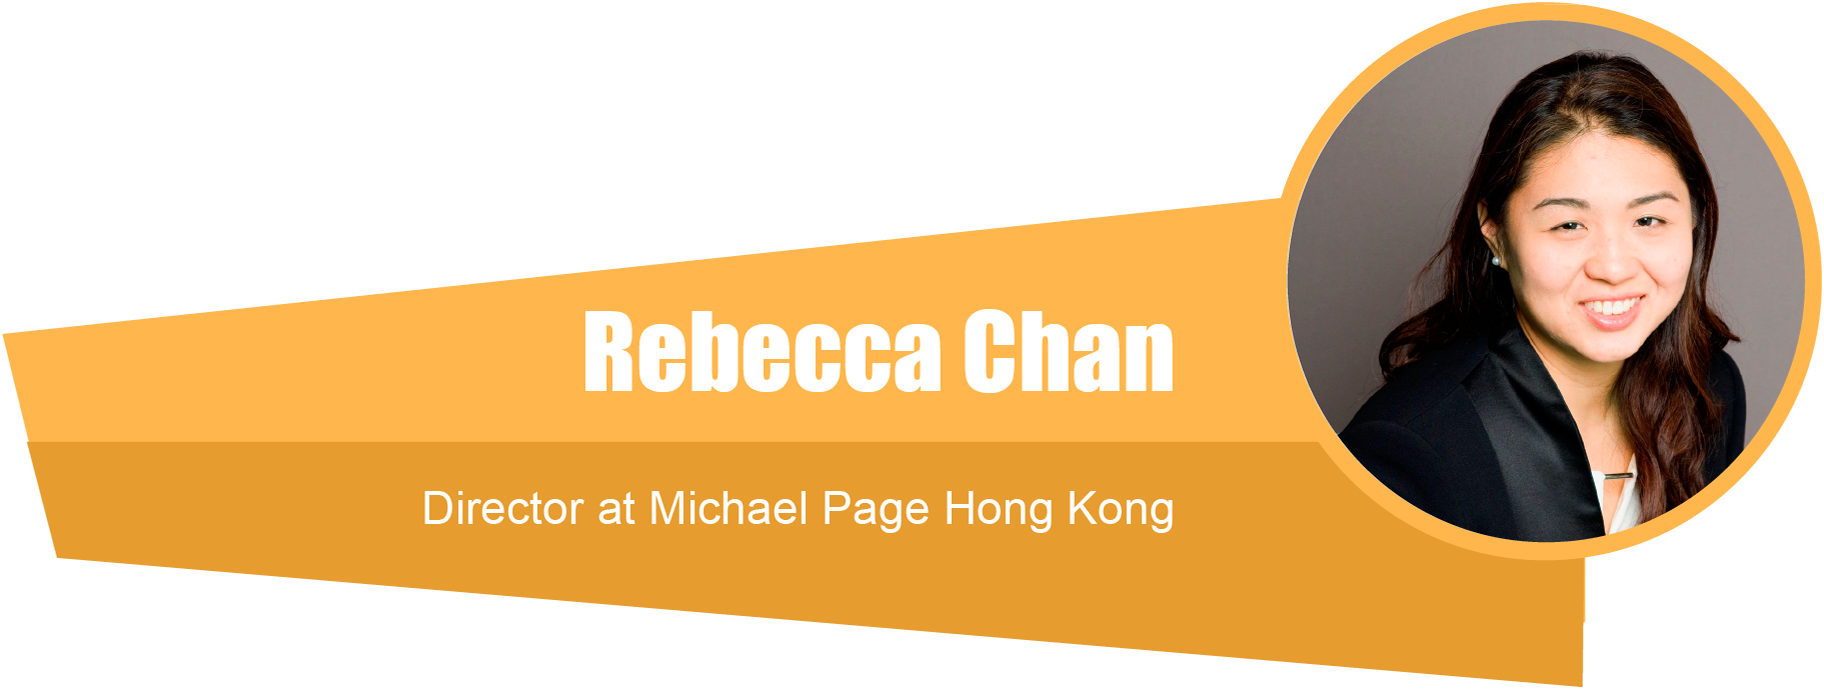 Rebecca Chan - Director at Michael Page Hong Kong